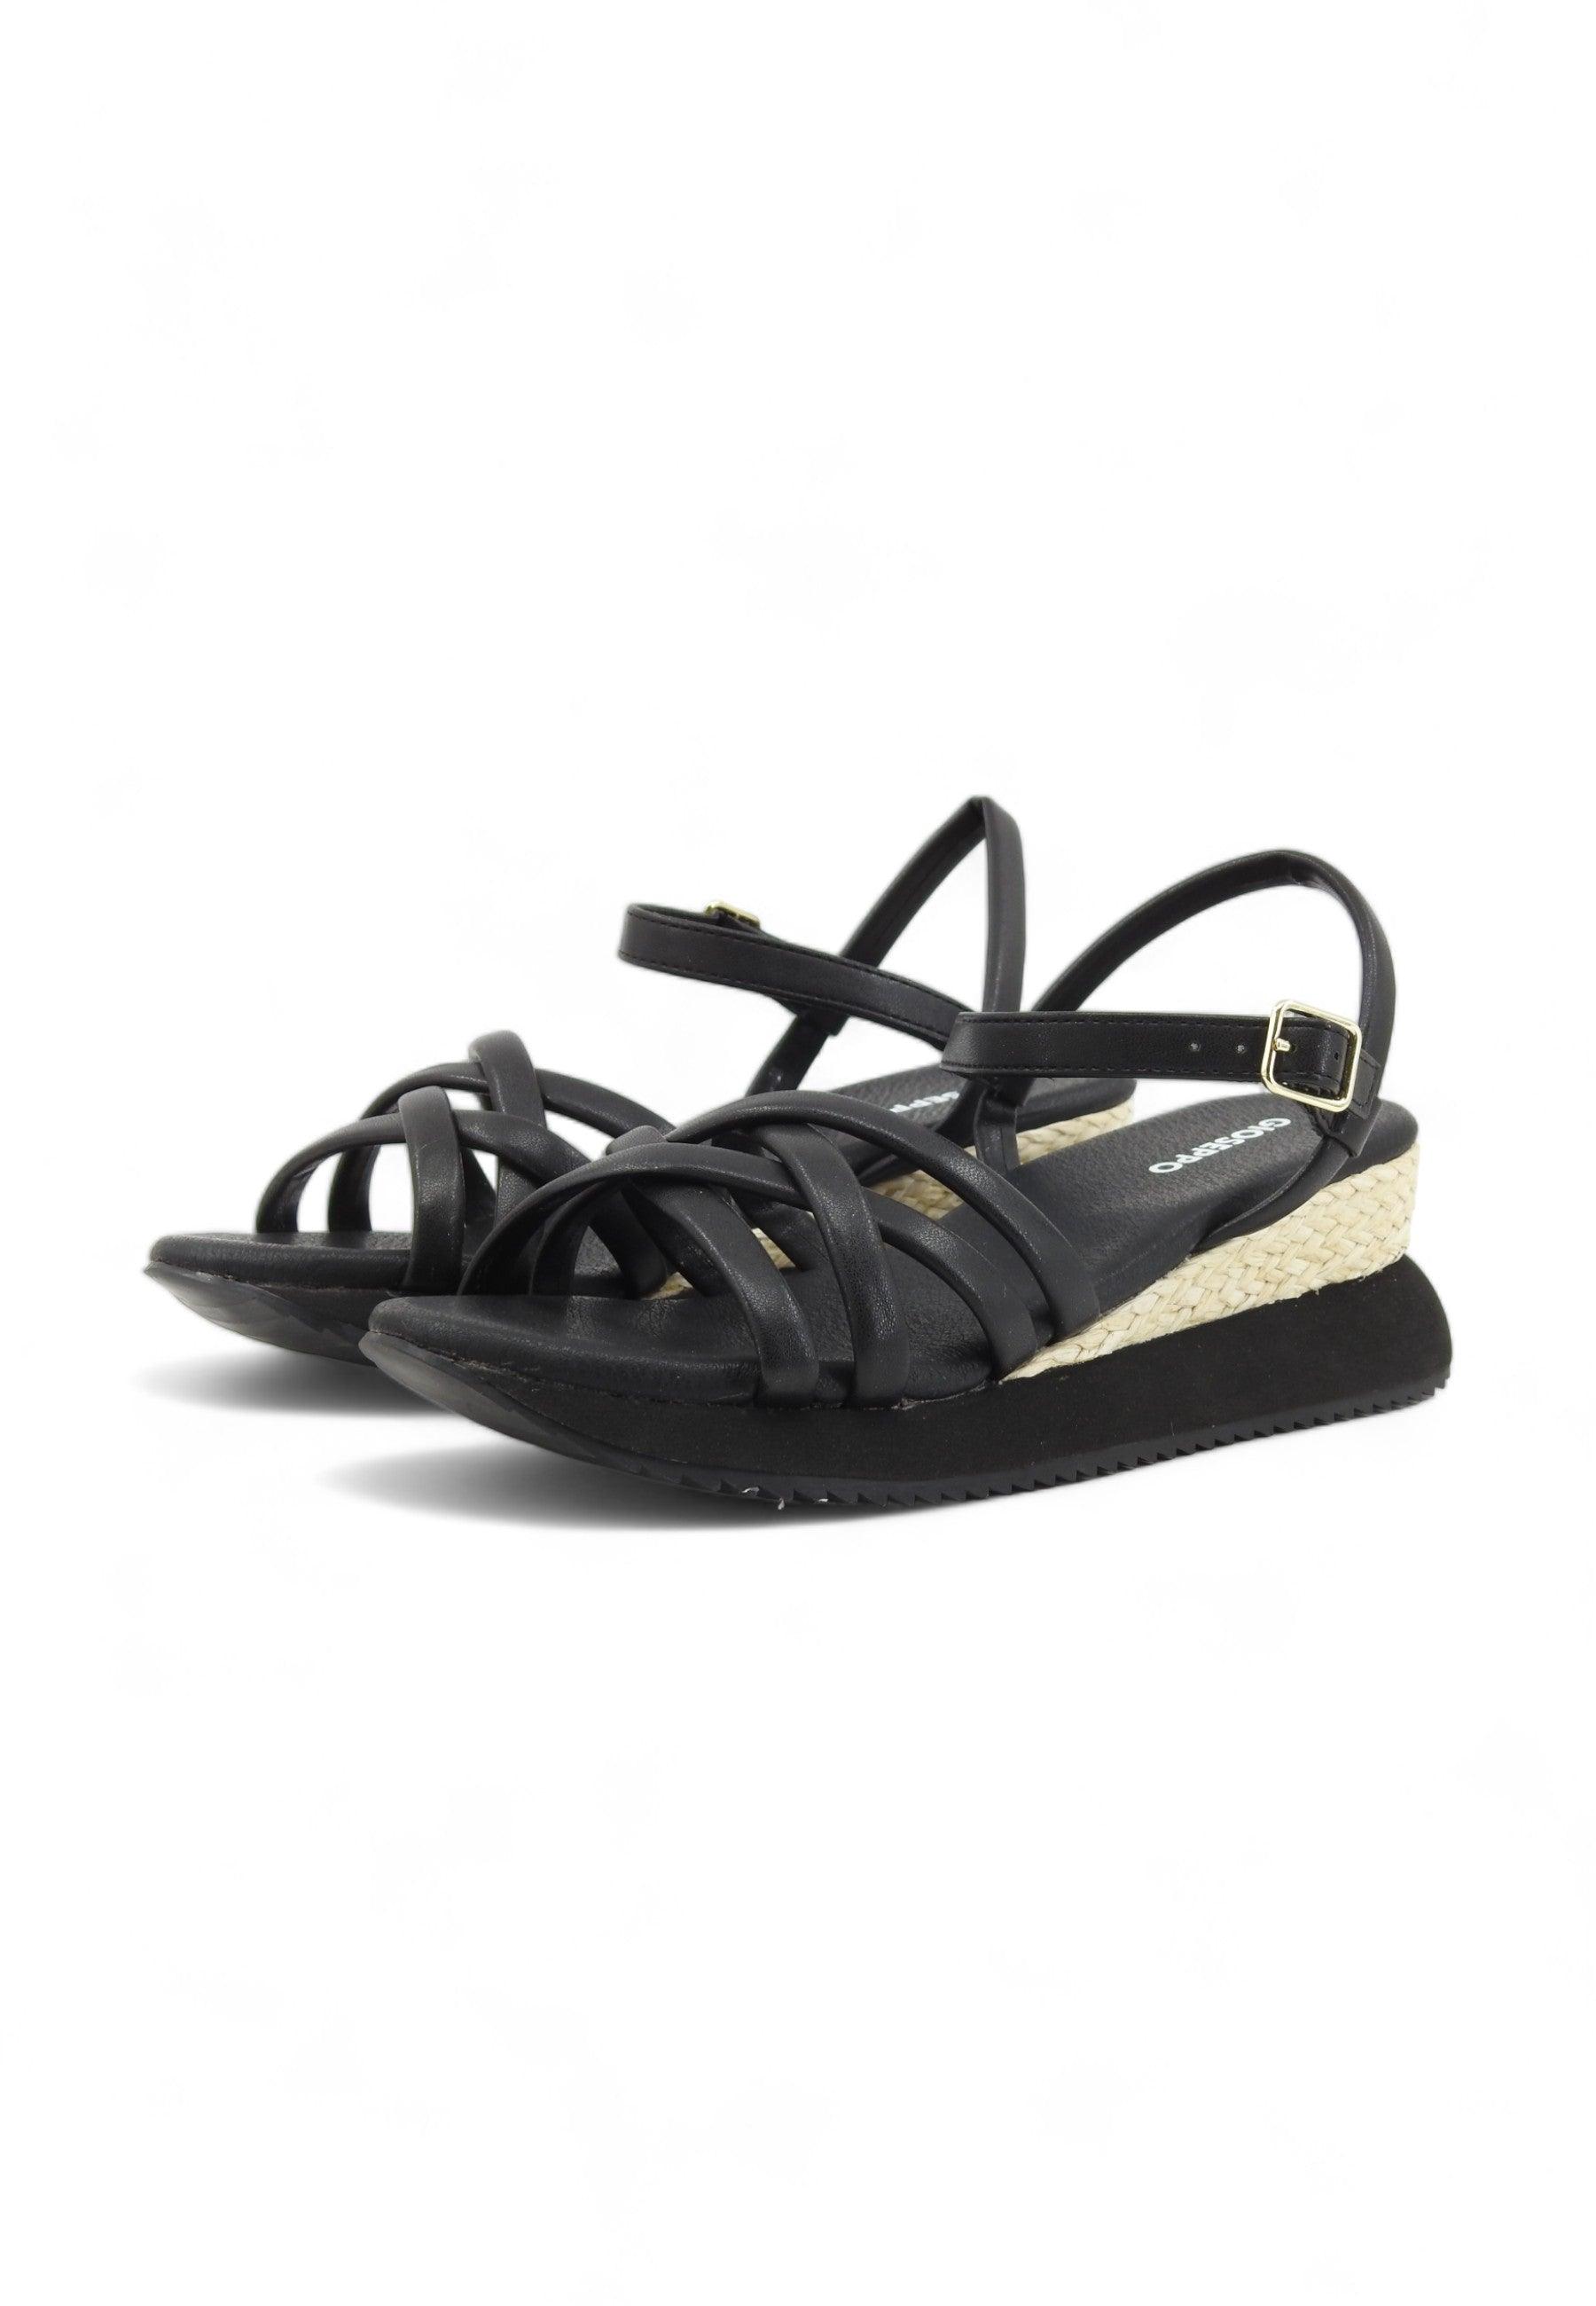 GIOSEPPO Permet Sandalo Donna Black 71060 - Sandrini Calzature e Abbigliamento